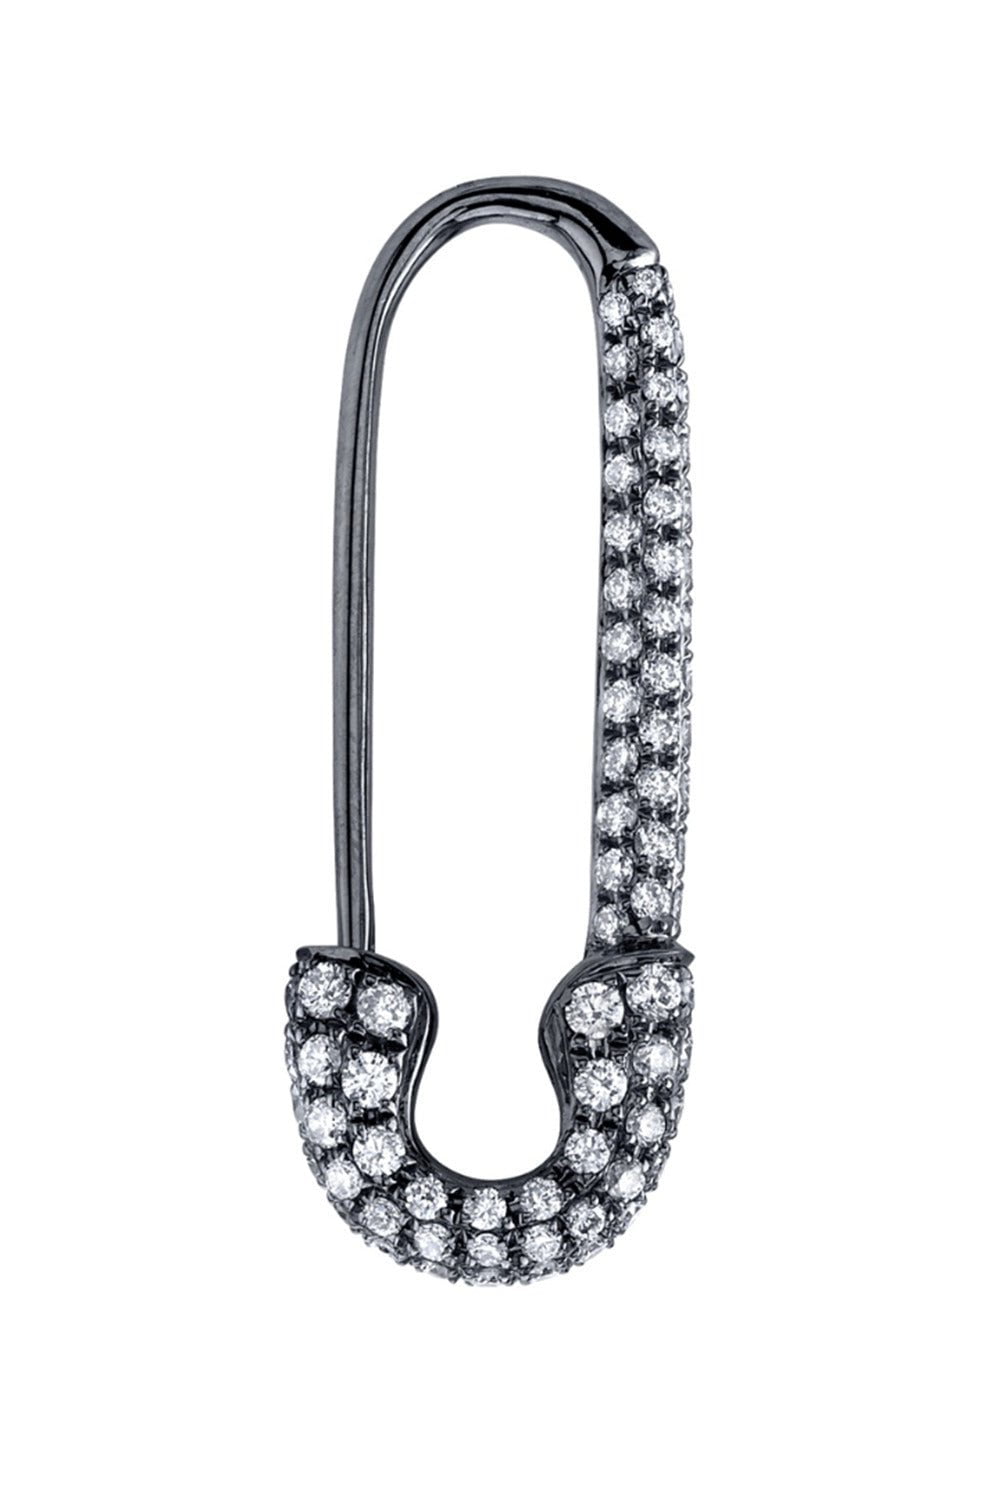 ANITA KO-Diamond Safety Pin Earring-BLACK GOLD